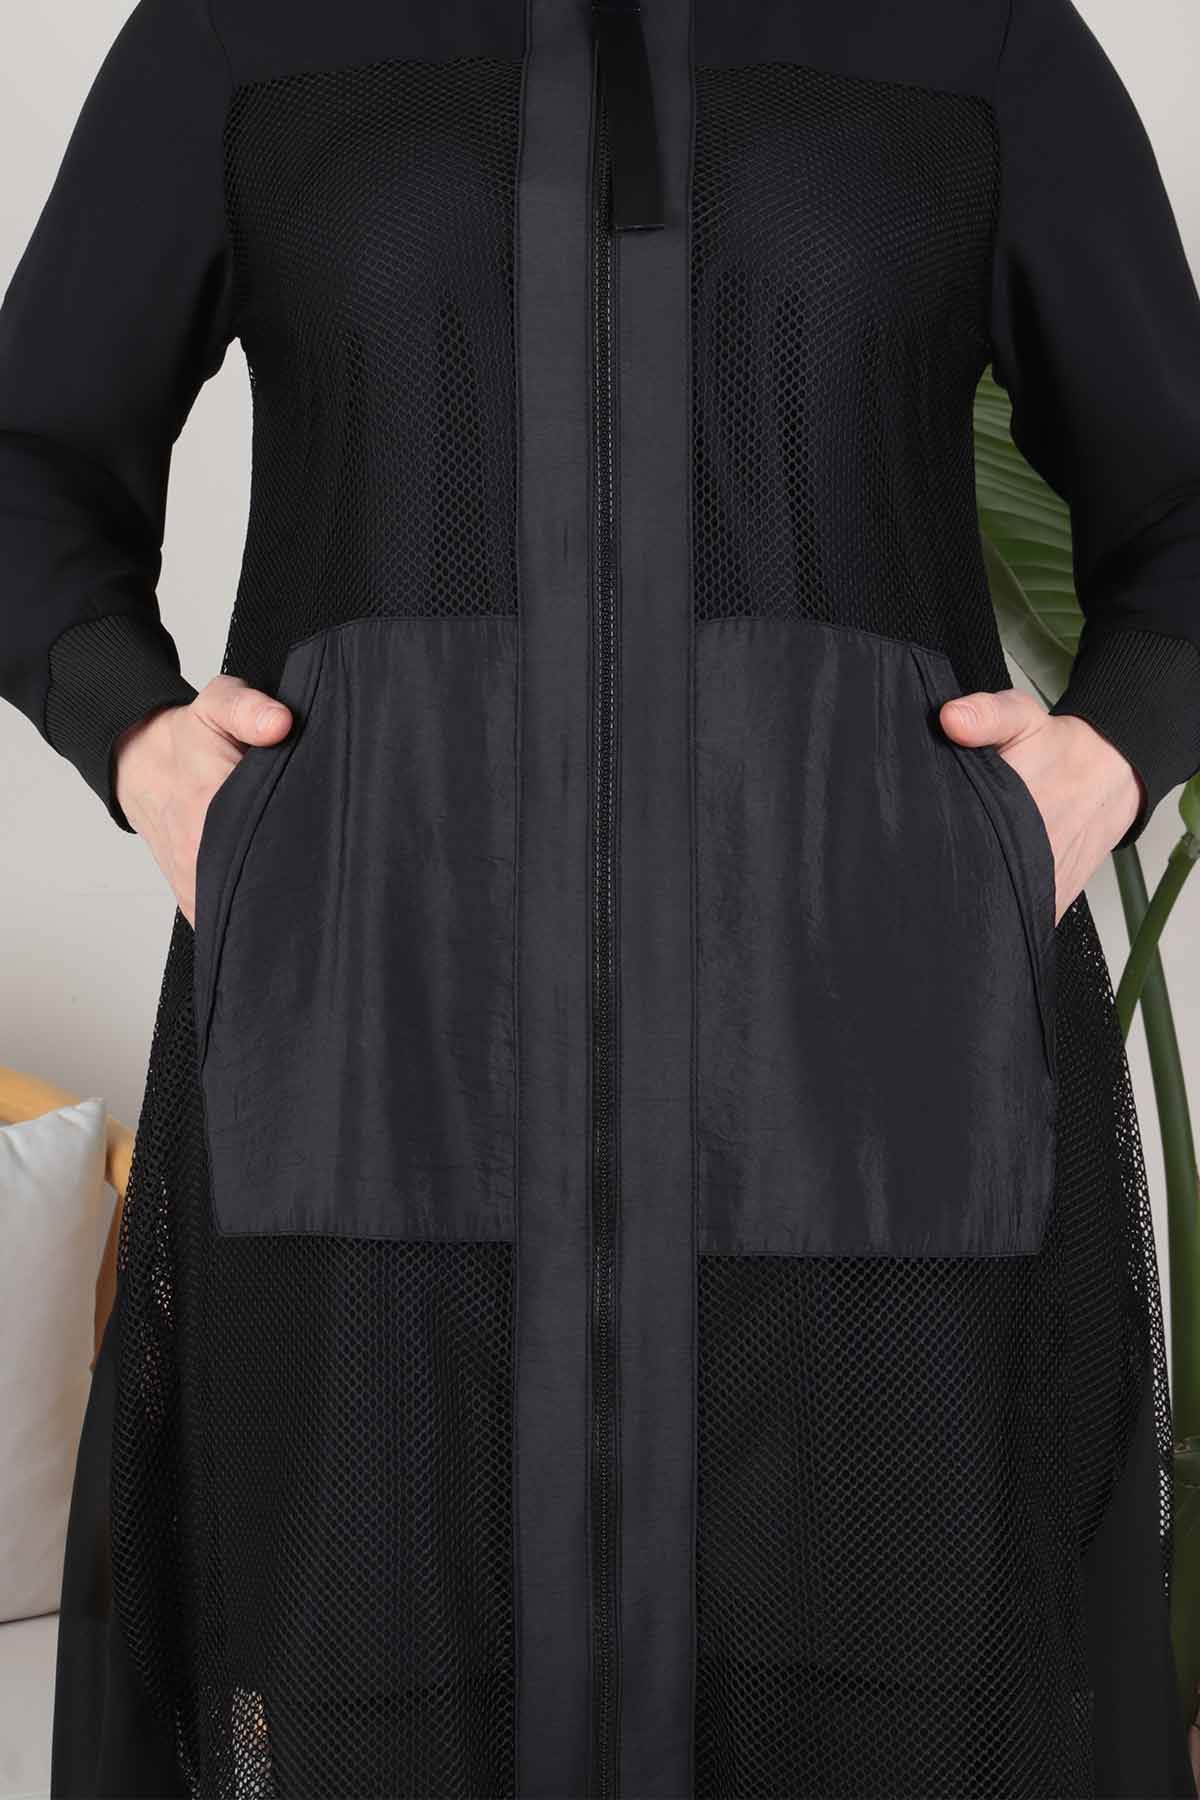 Büyük Beden Tesettür İç Bluzlu File Ceketli Pantolonlu Takım 70005 Siyah